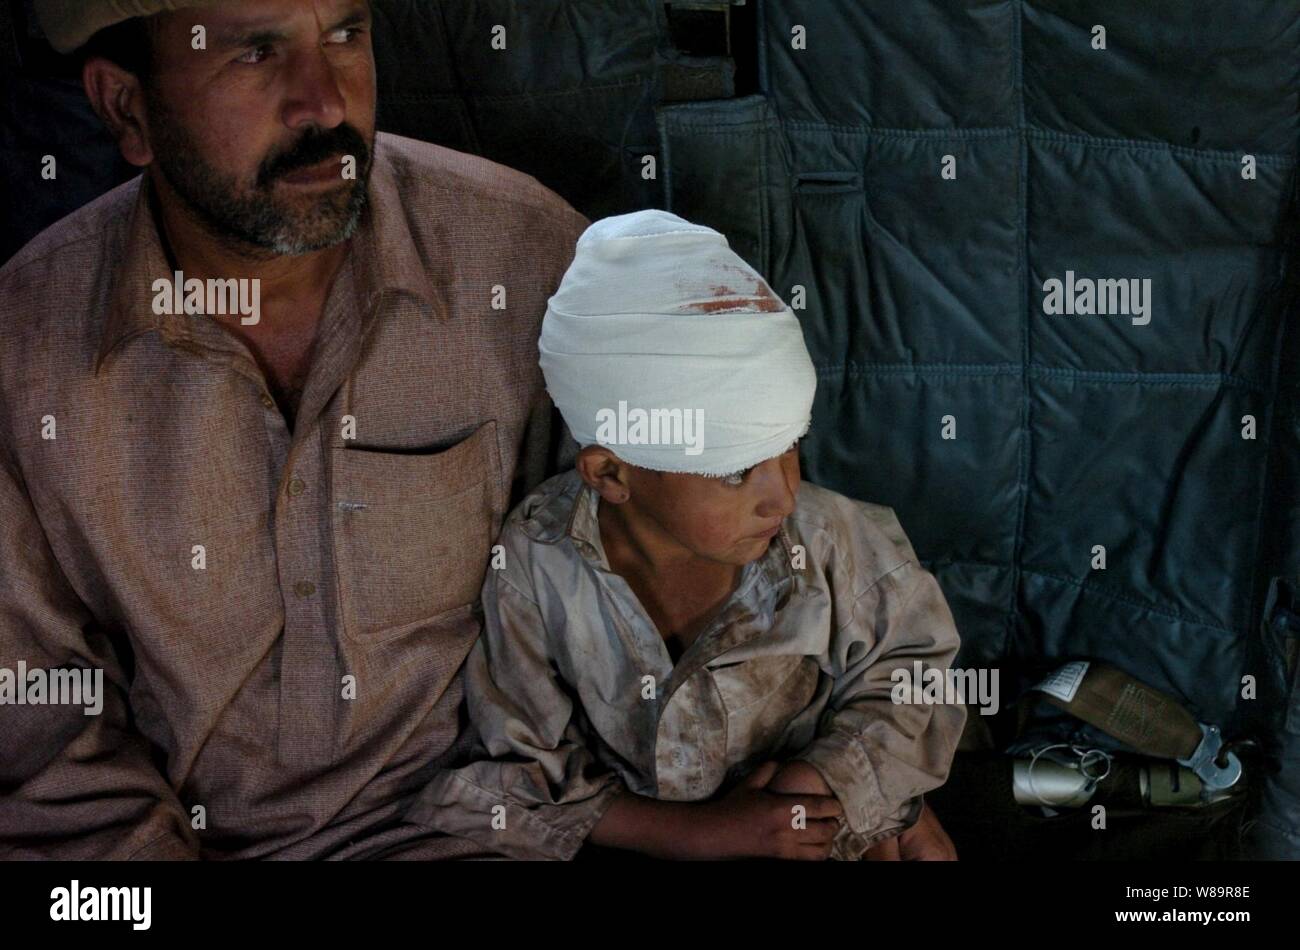 Einen pakistanischen Vater sitzt mit seinem Sohn an Bord eines U.S. Navy Sea Dragon MH-53 Hubschrauber, während Islamabad, Pakistan evakuiert werden, für die medizinische Behandlung am Okt. 17, 2005. Das Verteidigungsministerium ist die Teilnahme an der multinationalen Bemühung zu Pakistan und Indien und Afghanistan Humanitäre Hilfe und Unterstützung zur Verfügung zu stellen nach einem verheerenden Erdbeben. Stockfoto